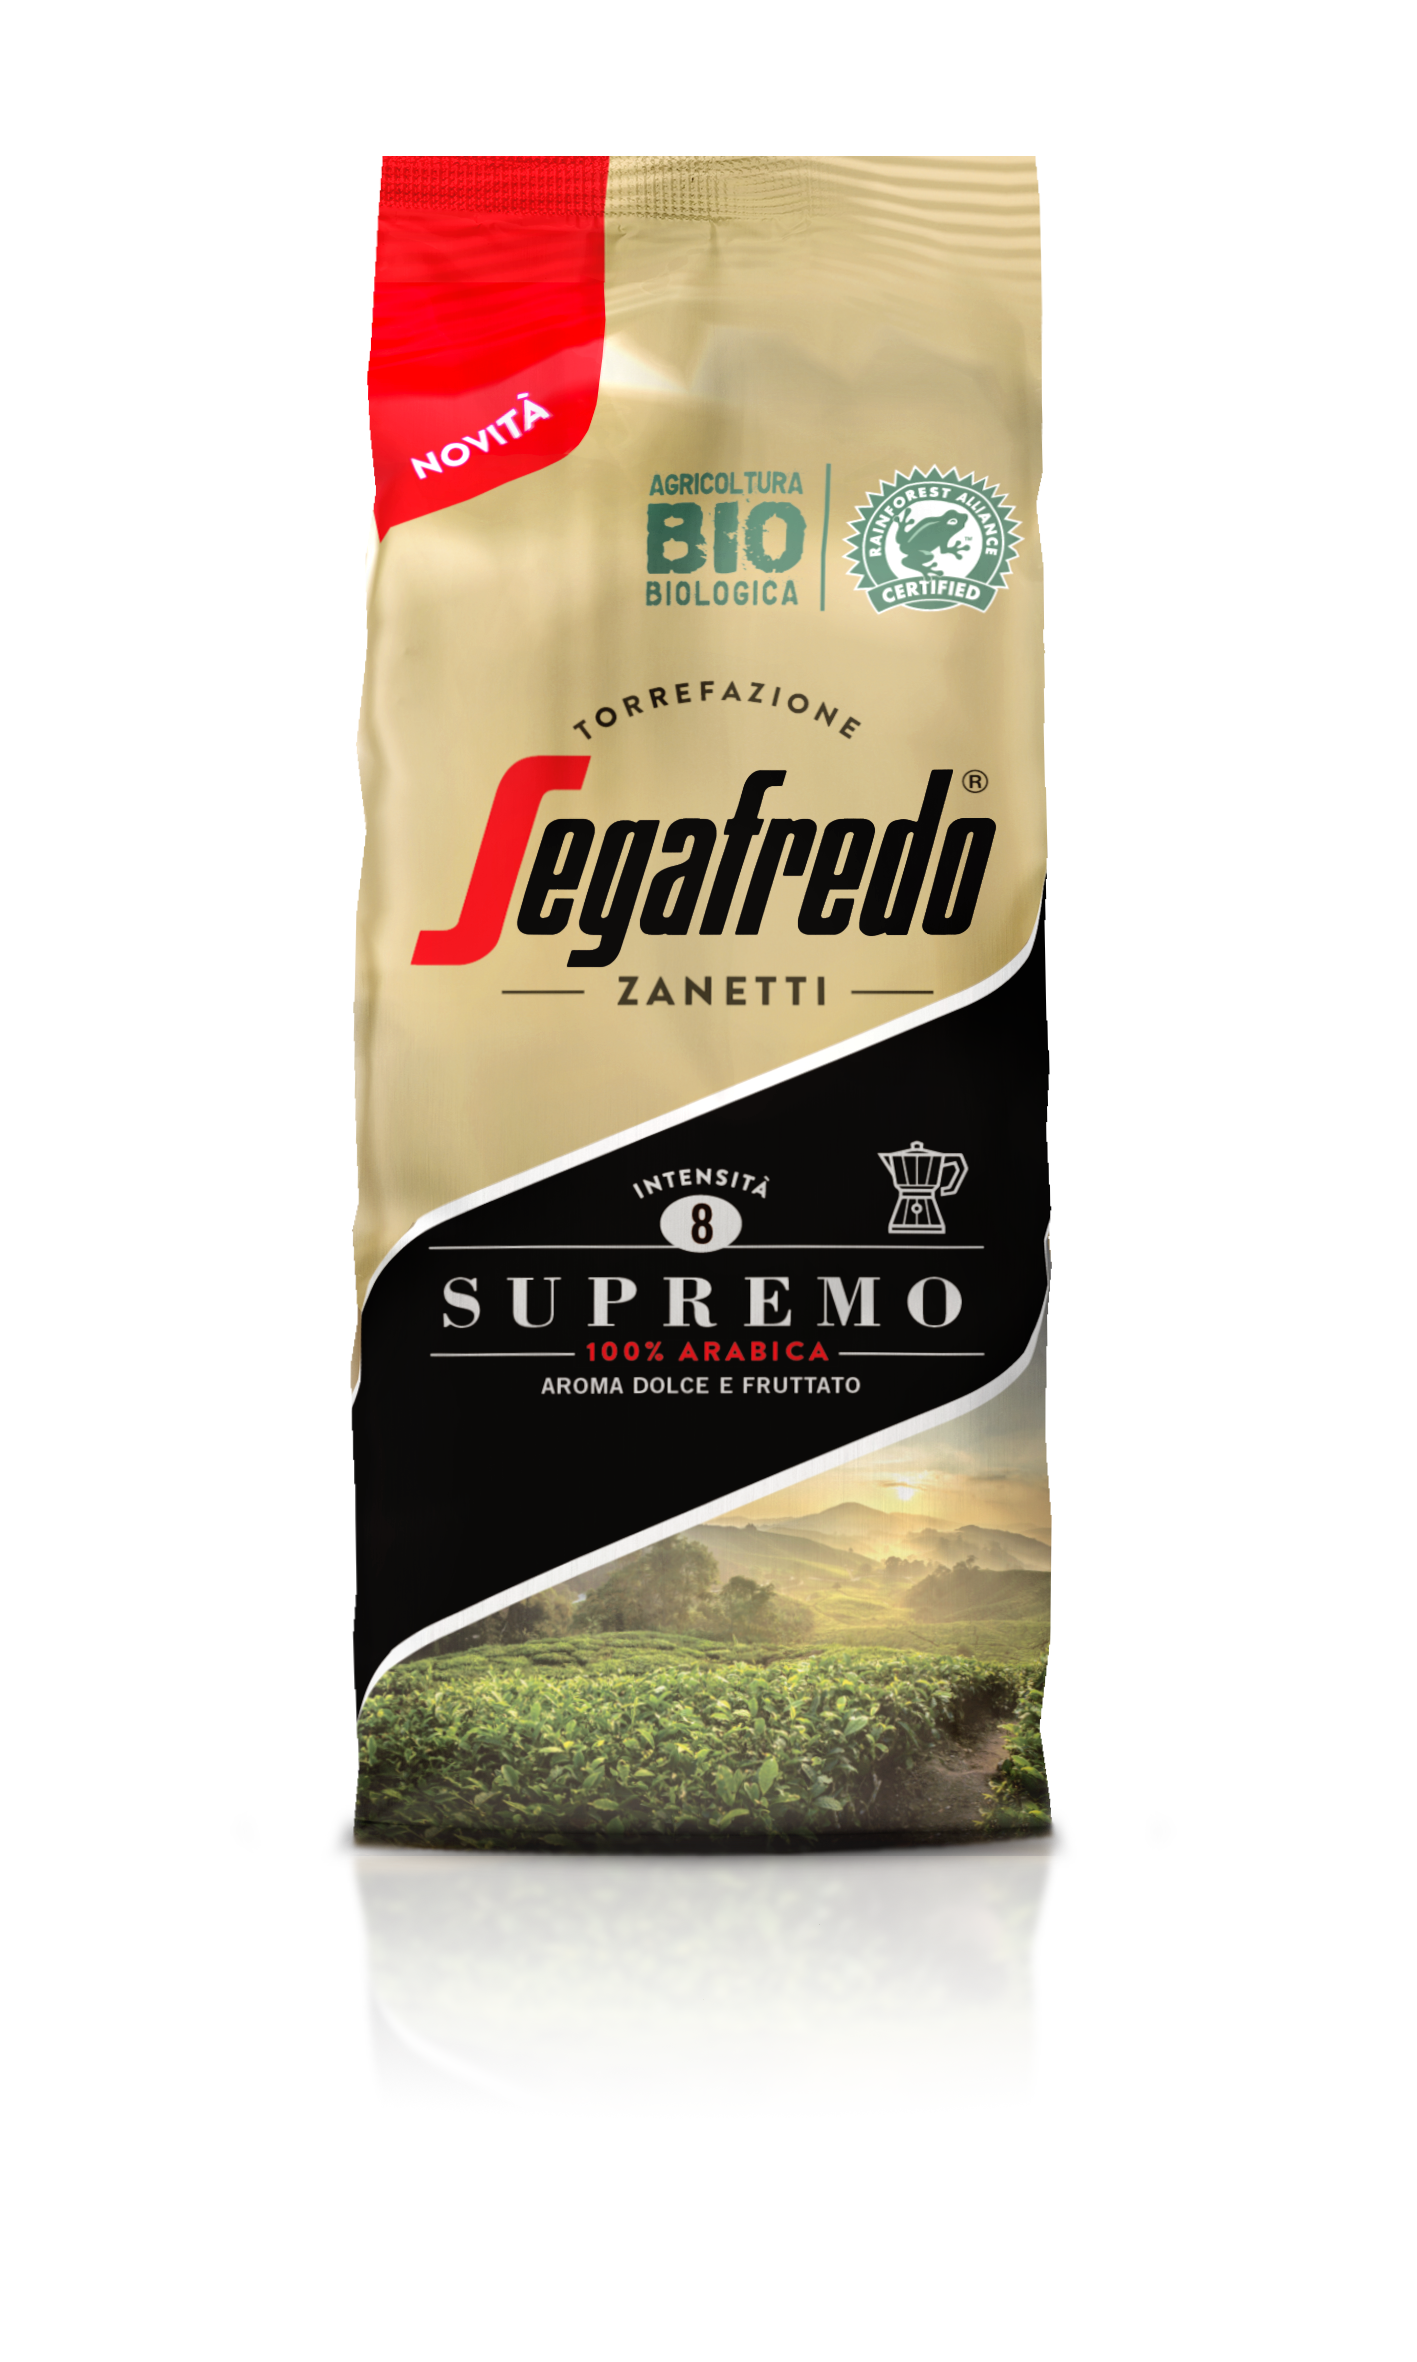 SEGAFREDO ZANETTI - SUPREMO 100% 阿拉比卡咖啡粉